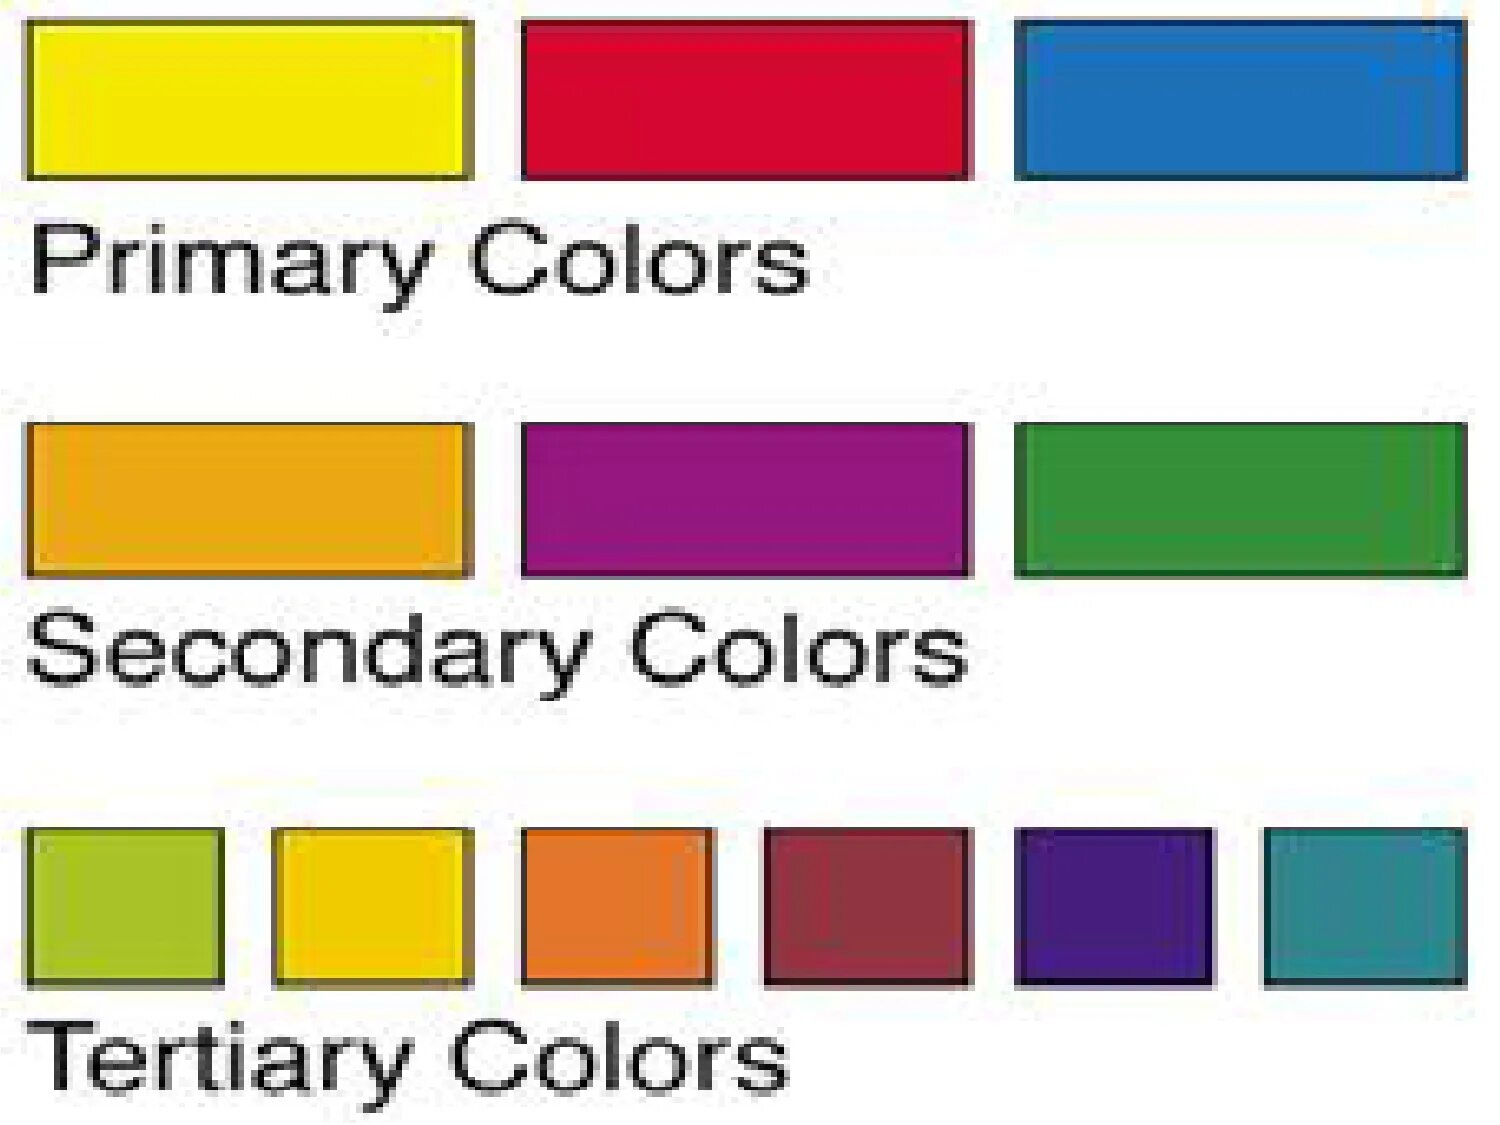 Unit colors. 10 Основных цветов. Основные цвета на французском. Primary Colors. Primary Color secondary Color.